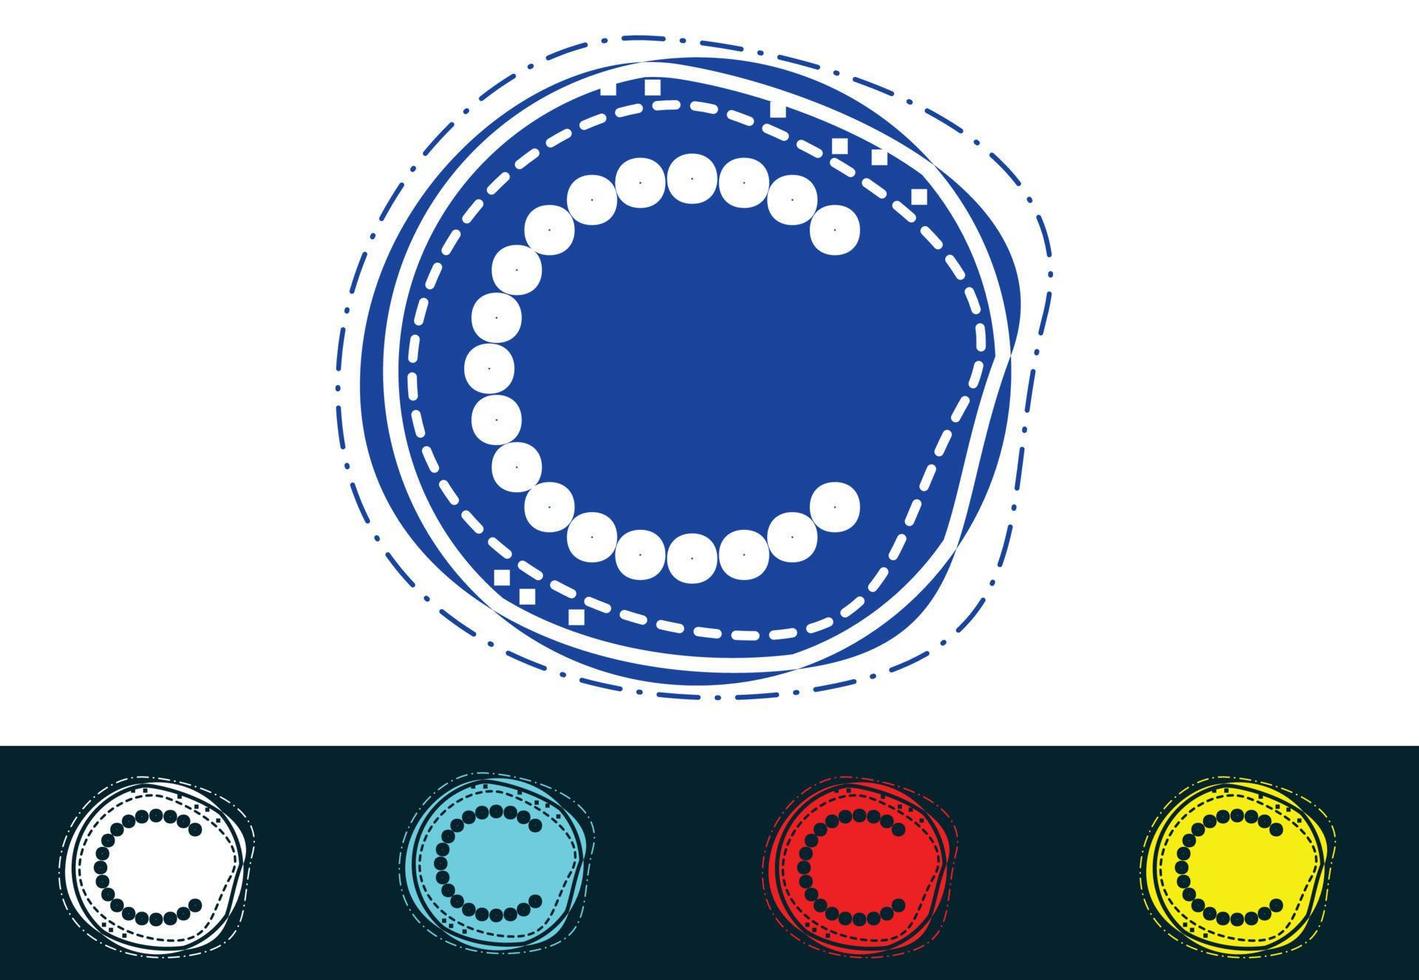 c letter nieuw logo en pictogramontwerp vector